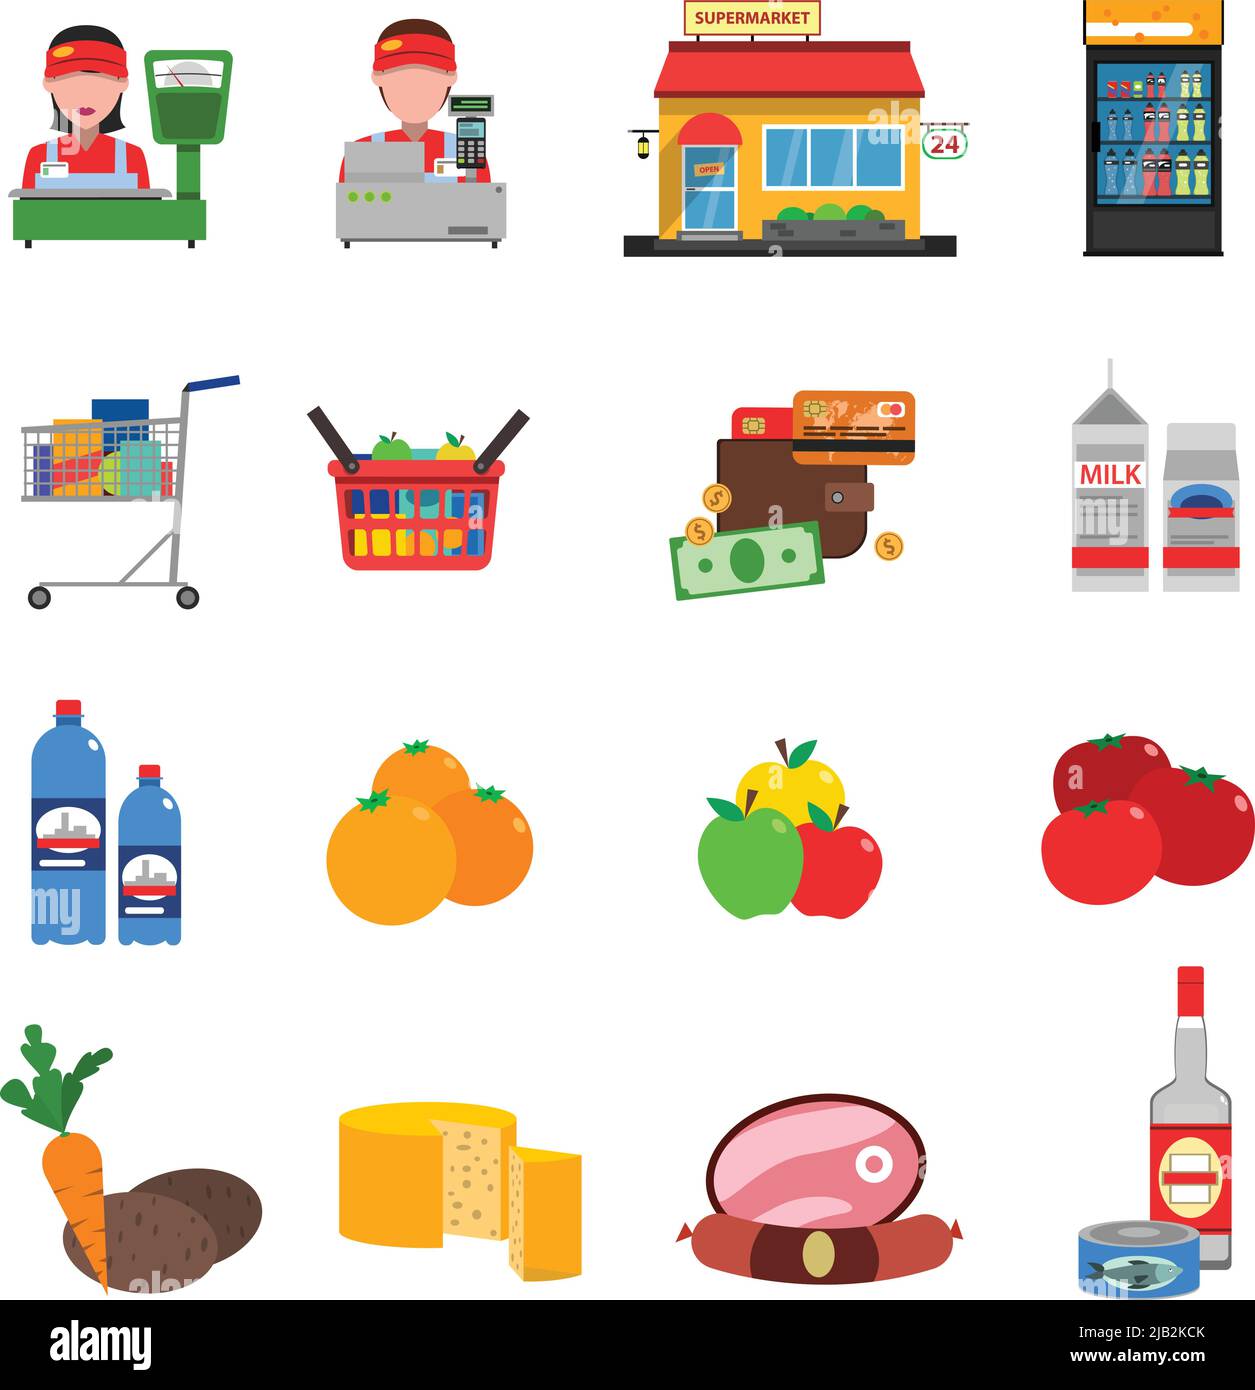 Supermarkt flache Symbole mit Lebensmitteln Kasse und Geld isoliert Vektor-Illustration gesetzt Stock Vektor